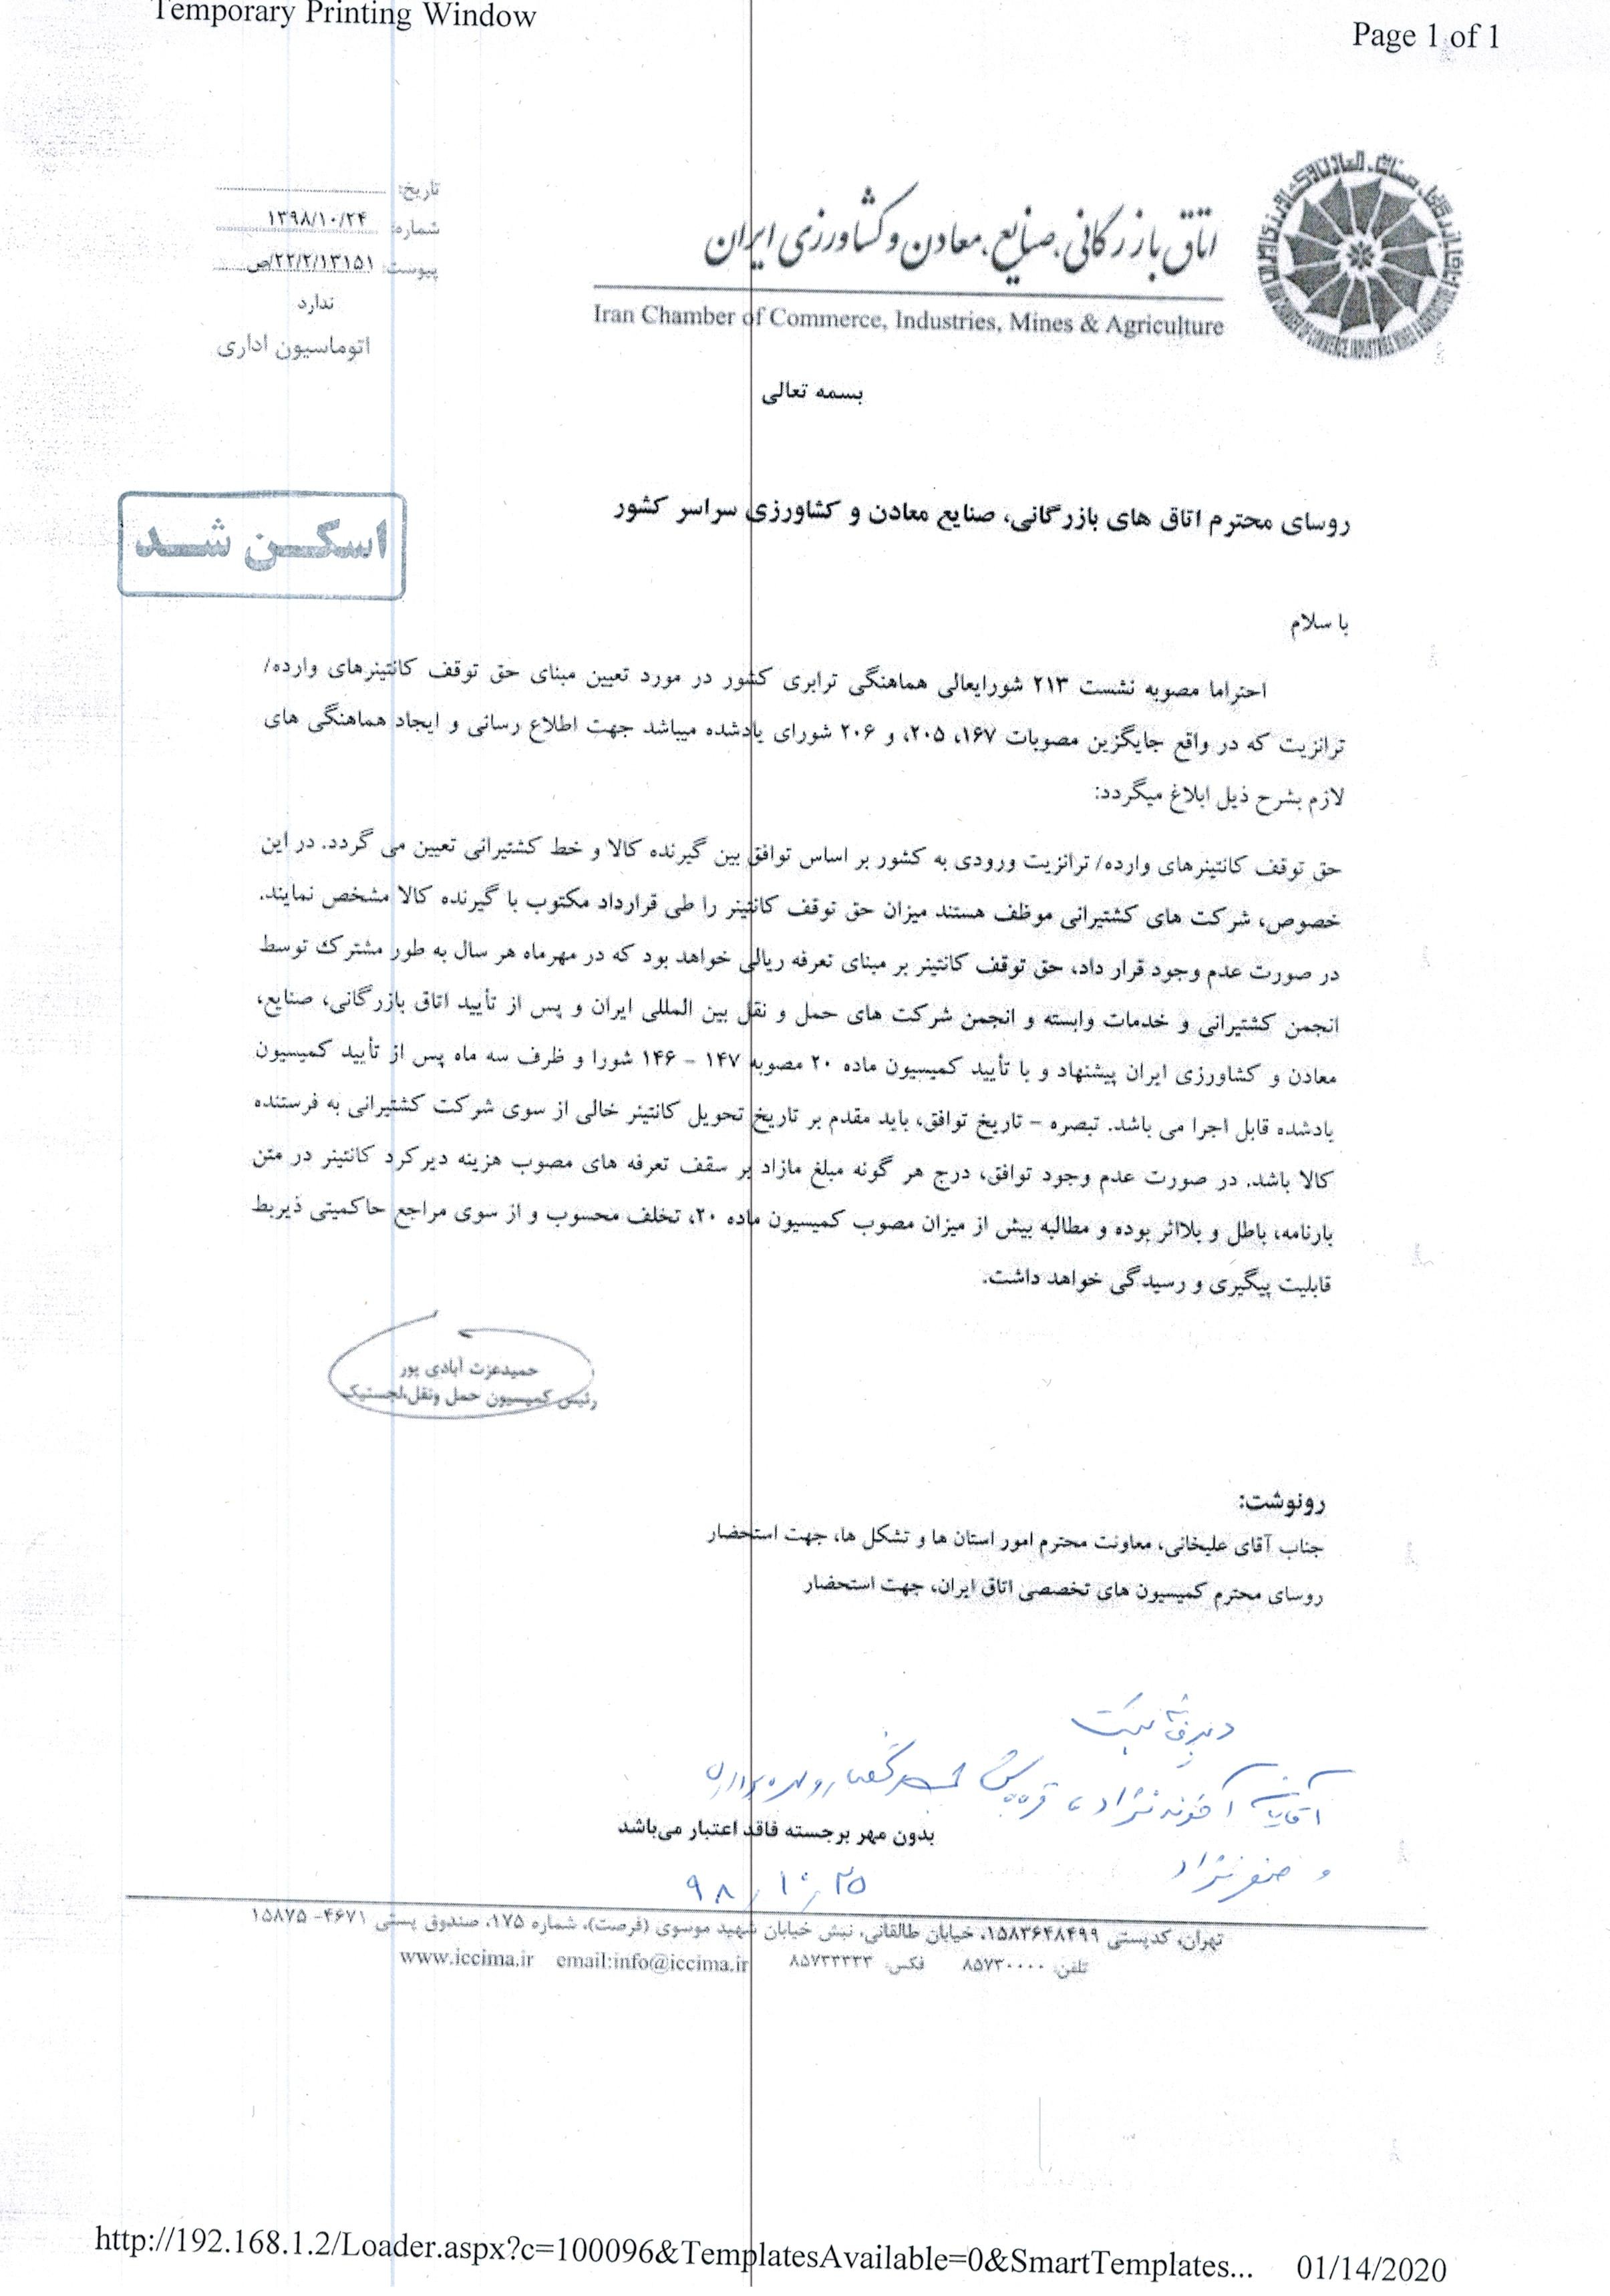 اطلاع رسانی مصوبه 213 شورای عالی - استان های